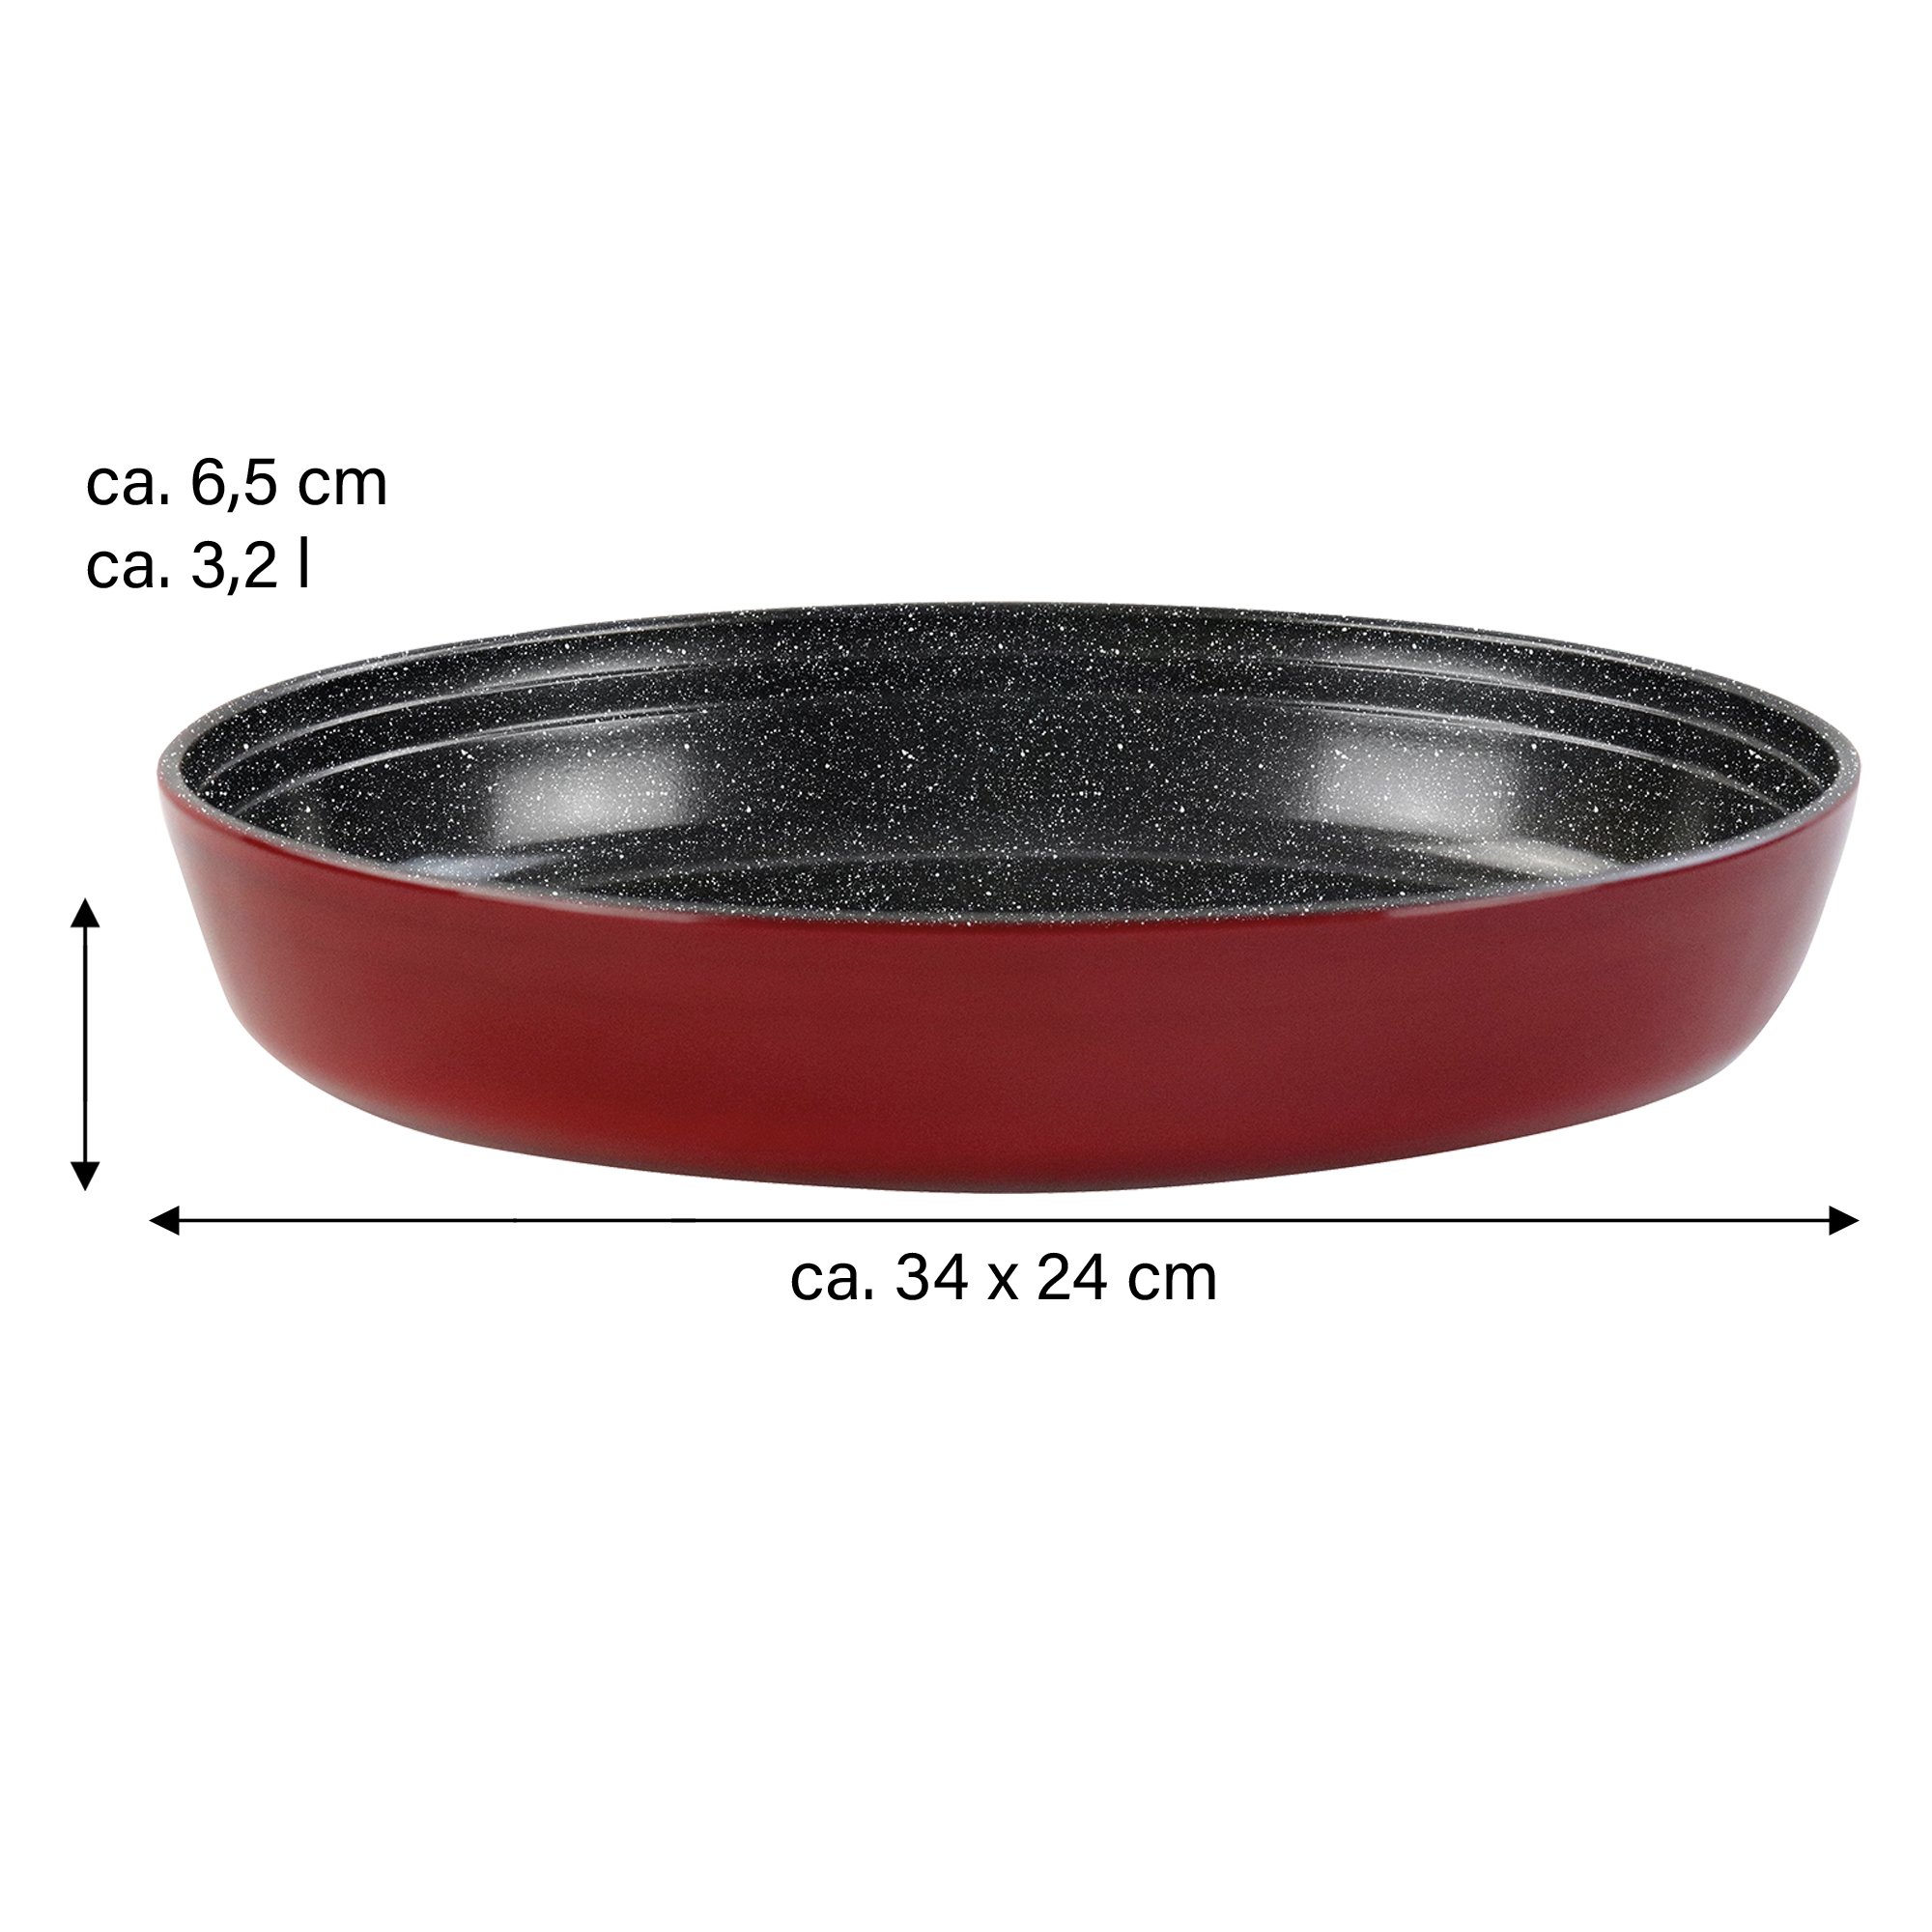 STONELINE® Oval Baking Dish 34x24 cm | Non-Stick Borosilicate Glass Oven Dish